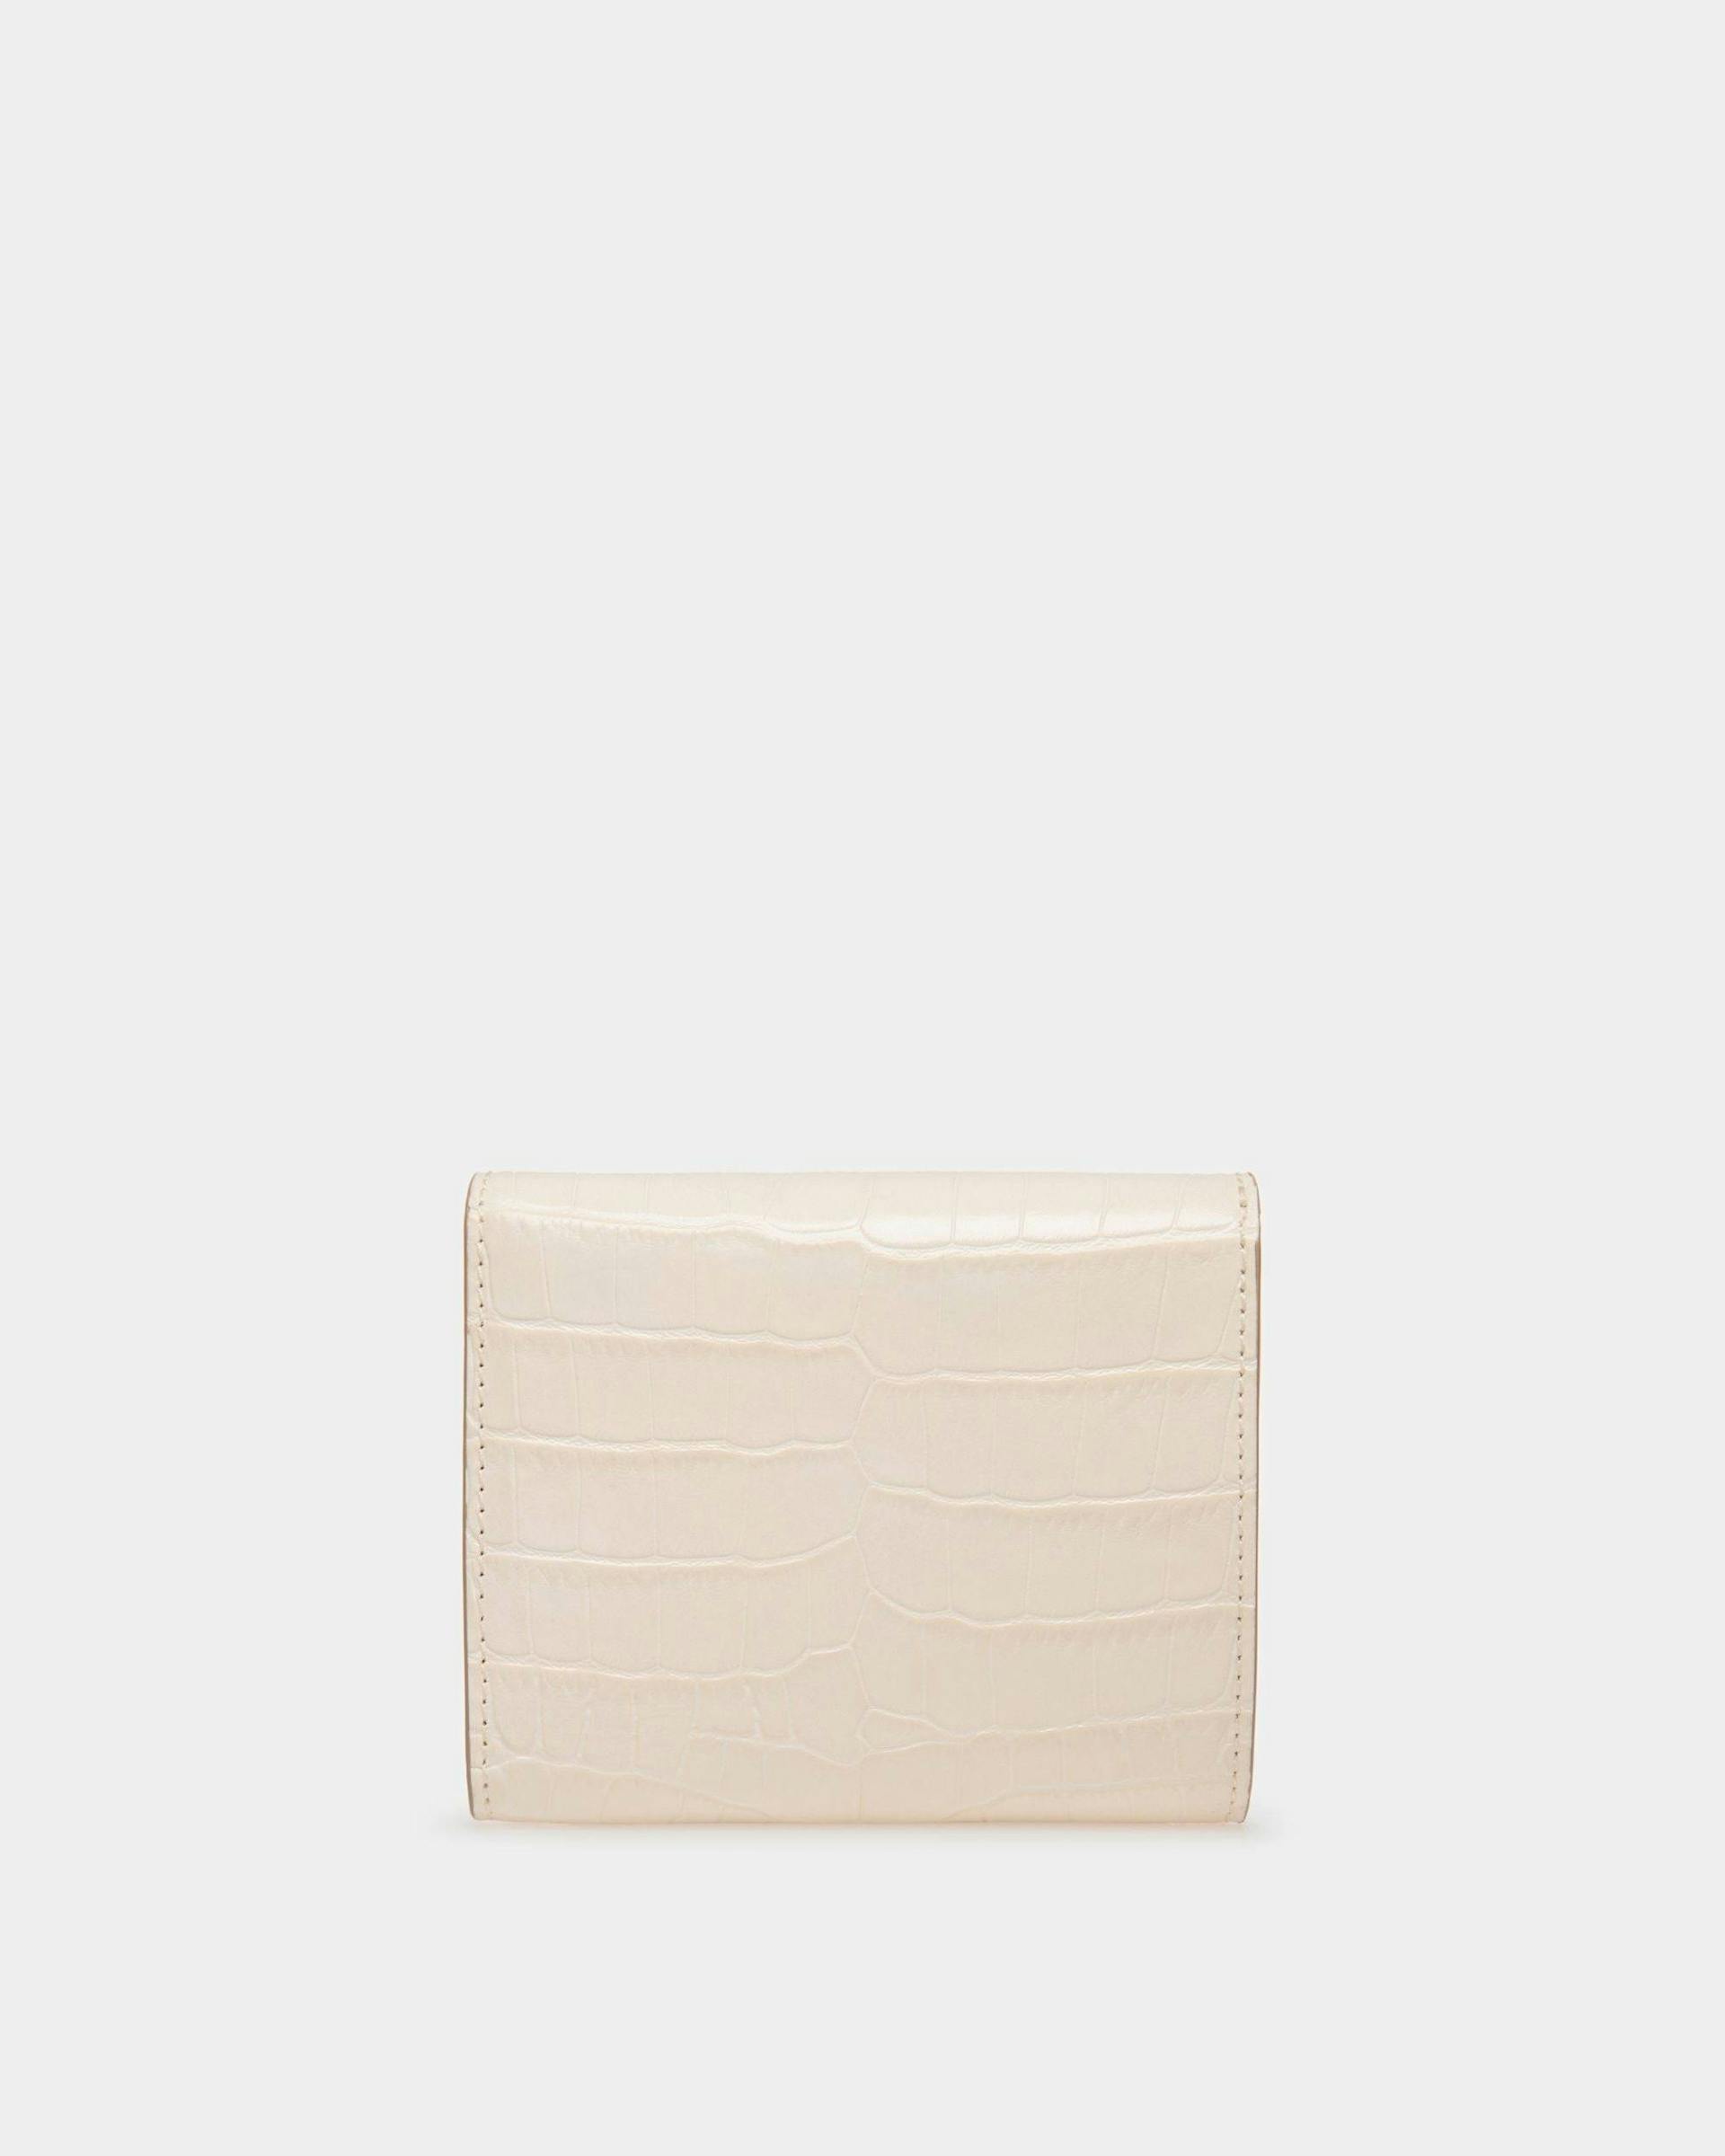 Women's Tilt Wallet In White Crocodile Print Leather | Bally | Still Life Back